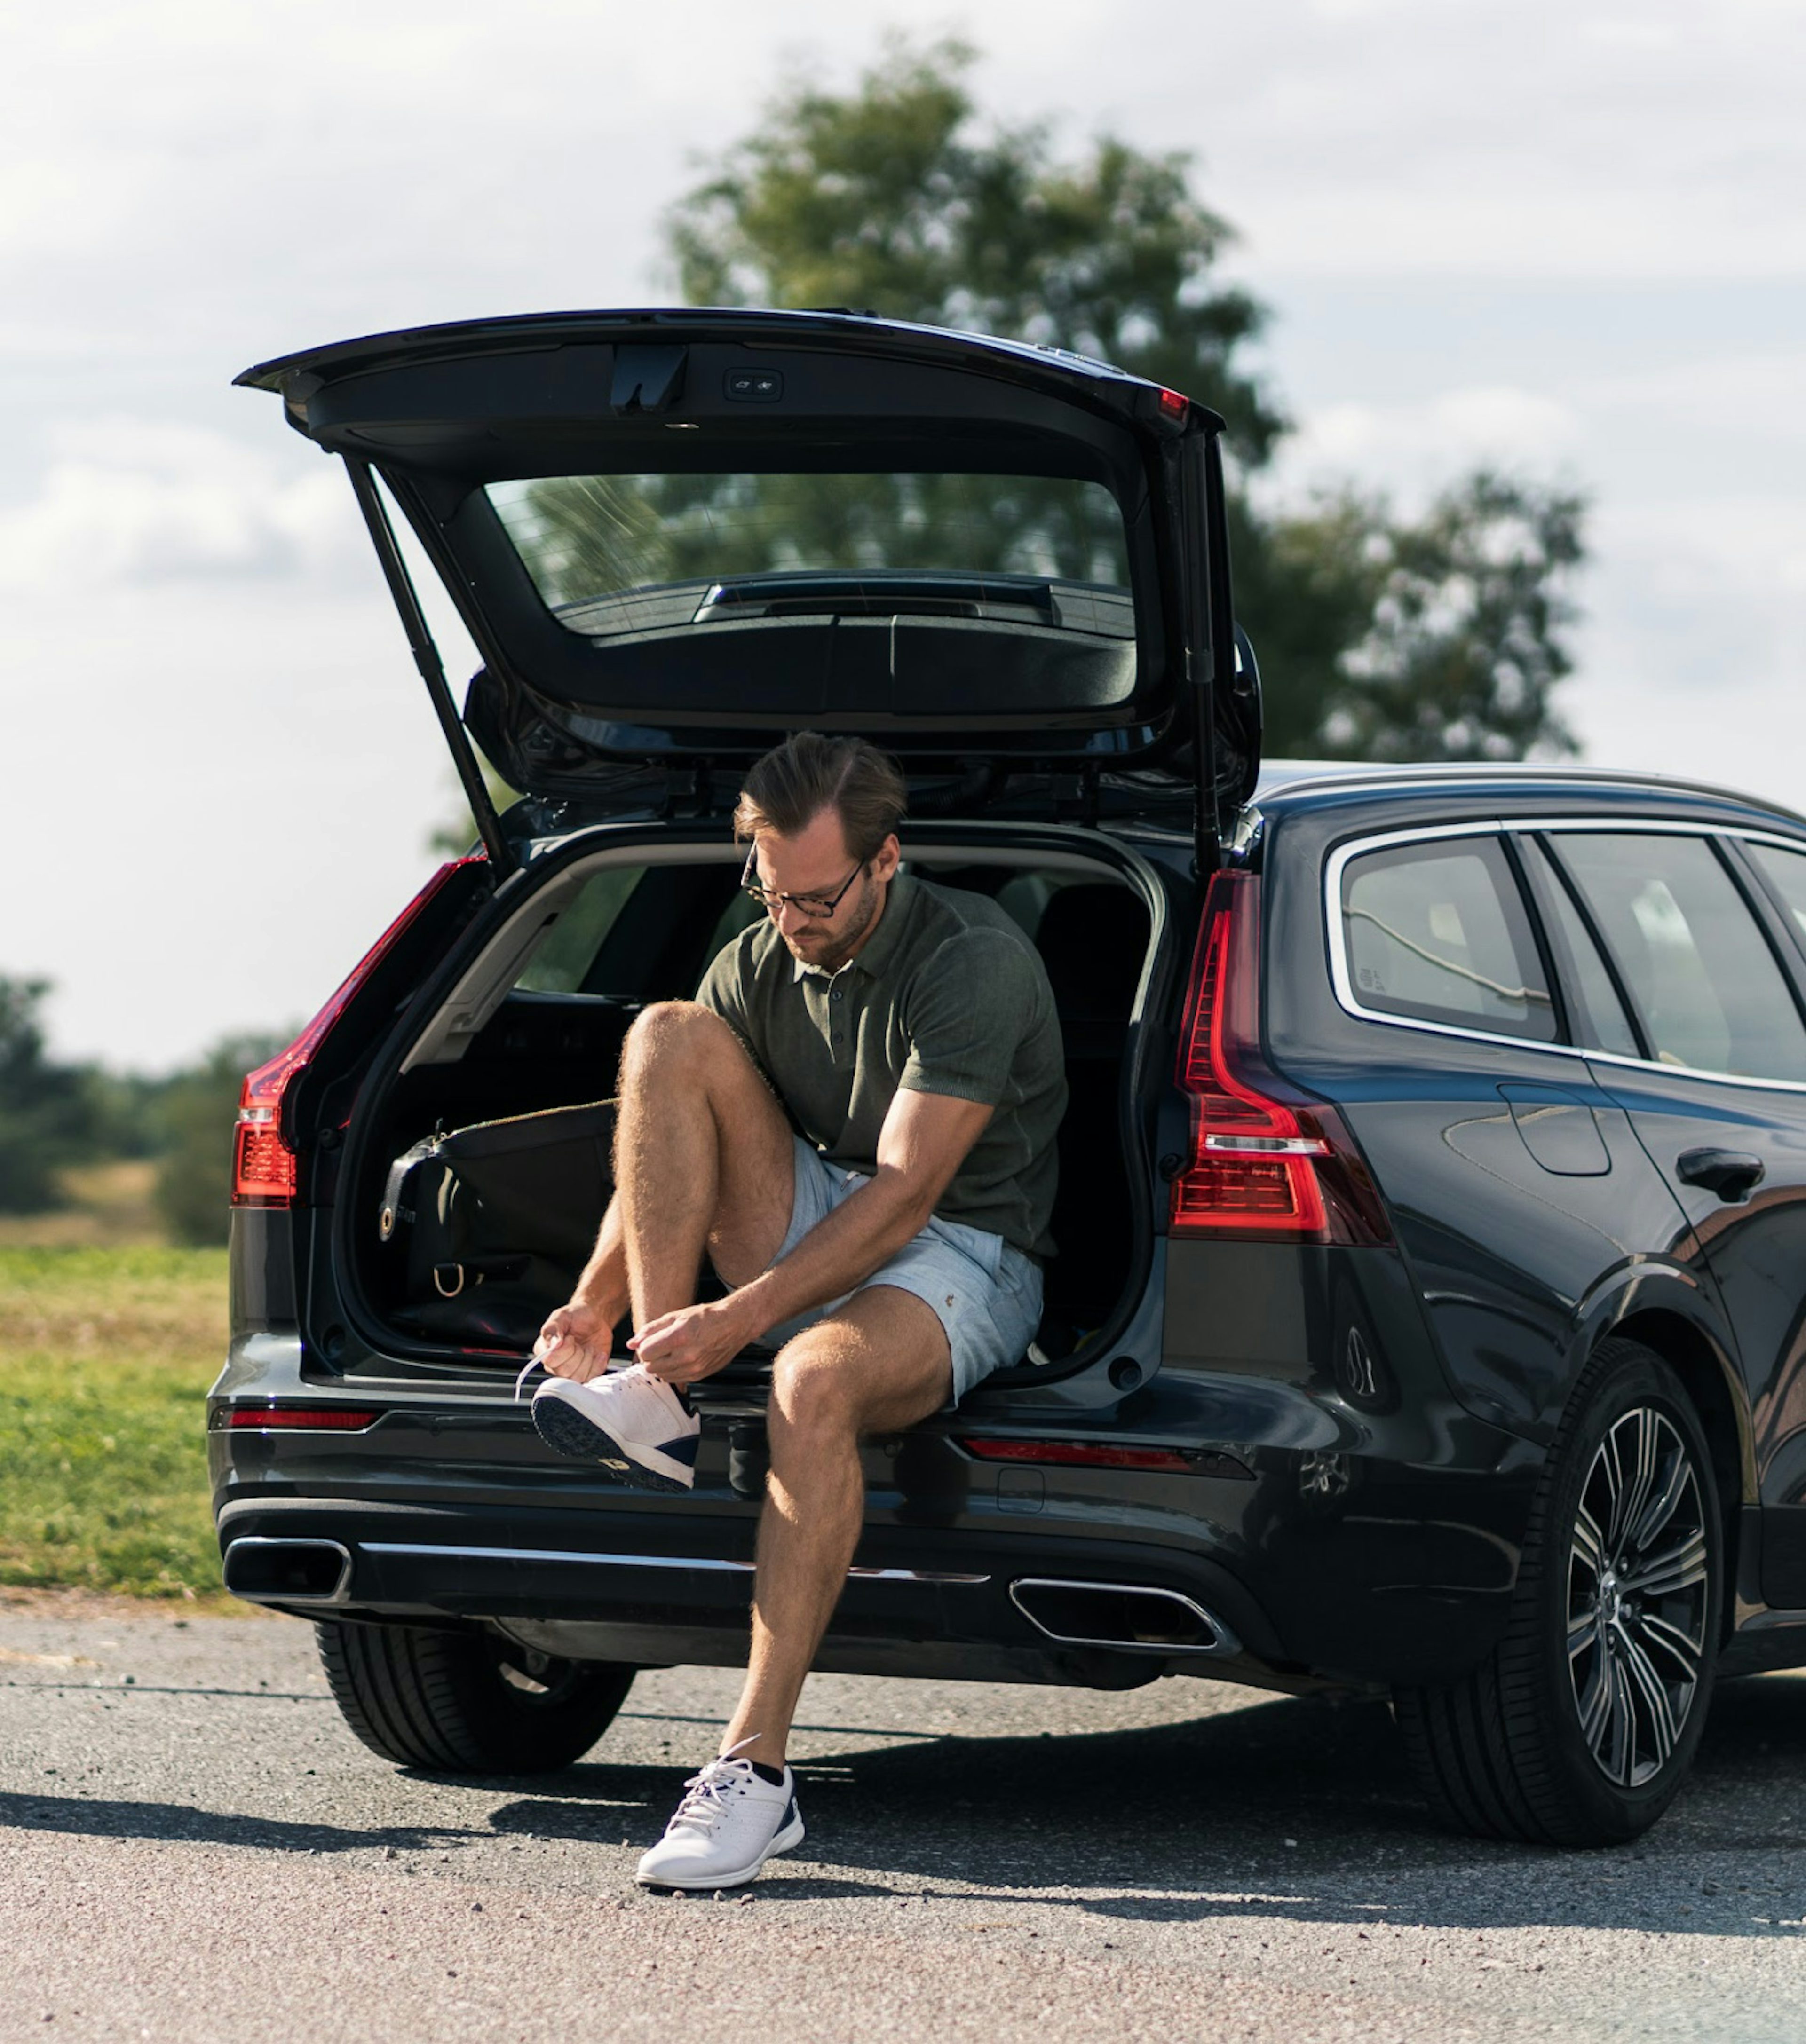 En man sitter på bakluckan av en Volvo som står parkerad i ett naturområde, han knyter sina skor.